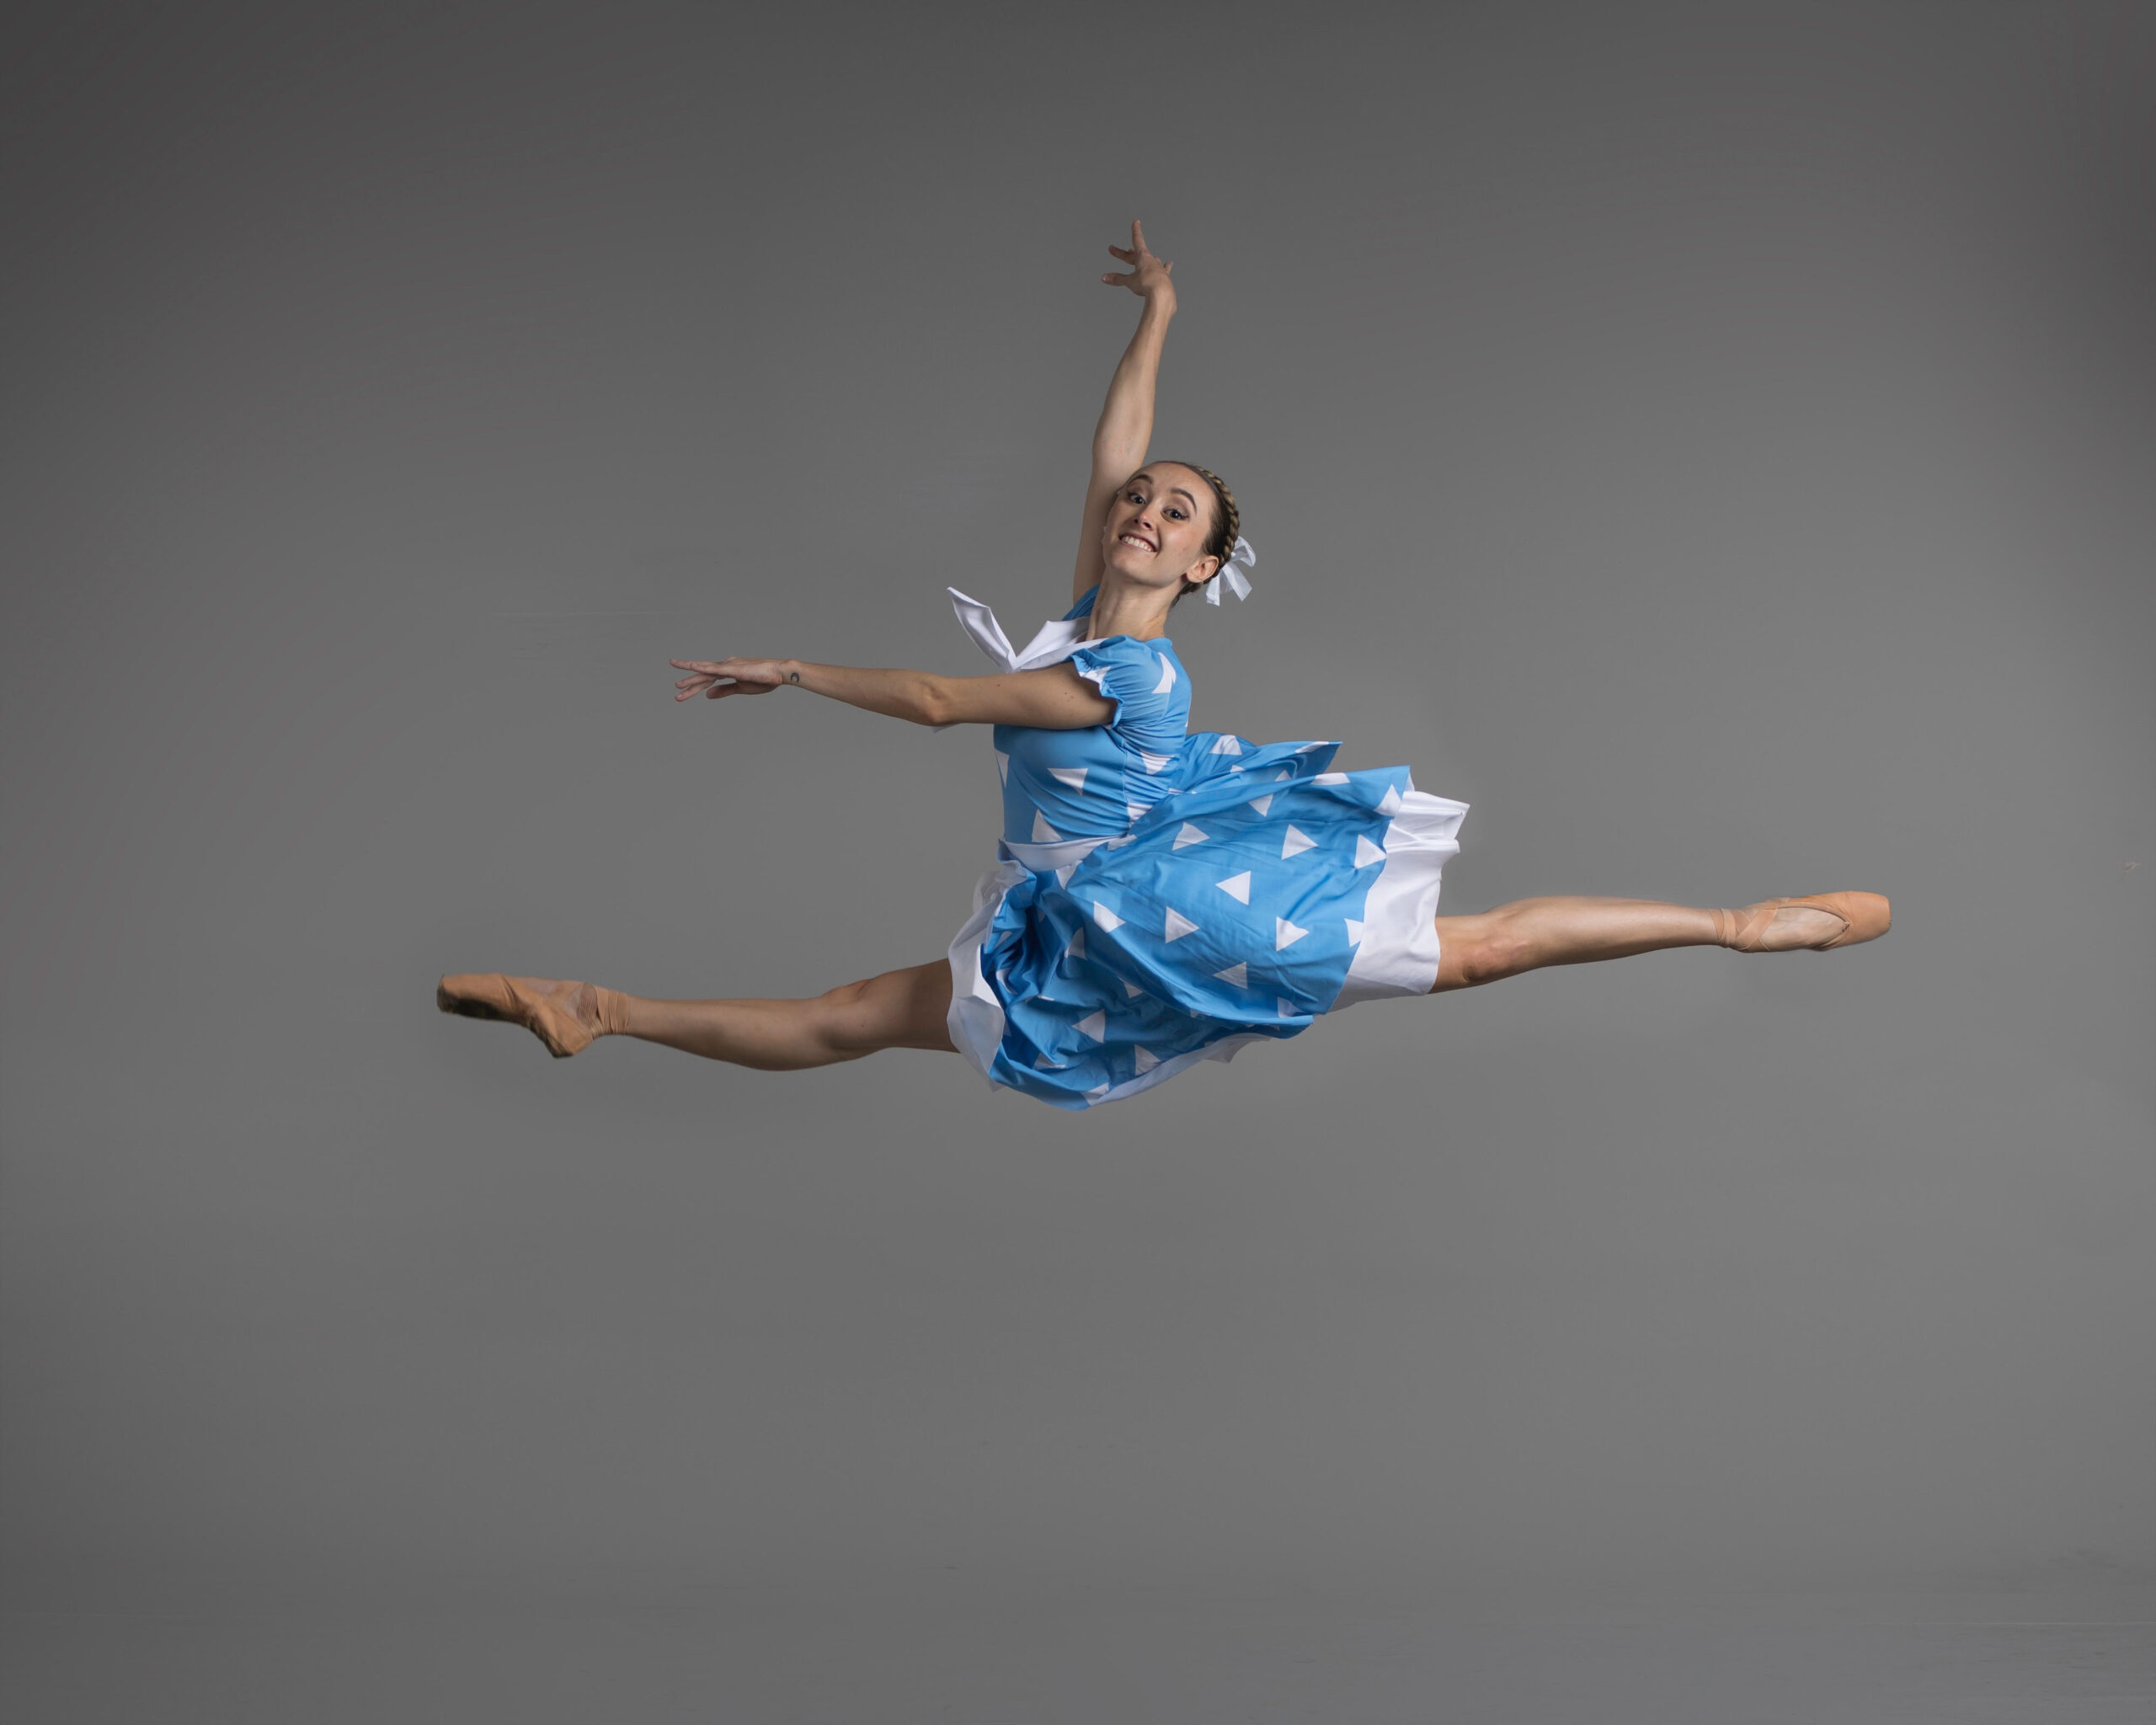 La Clase de ballet clásico - cómo se compone y sus partes y ejercicios